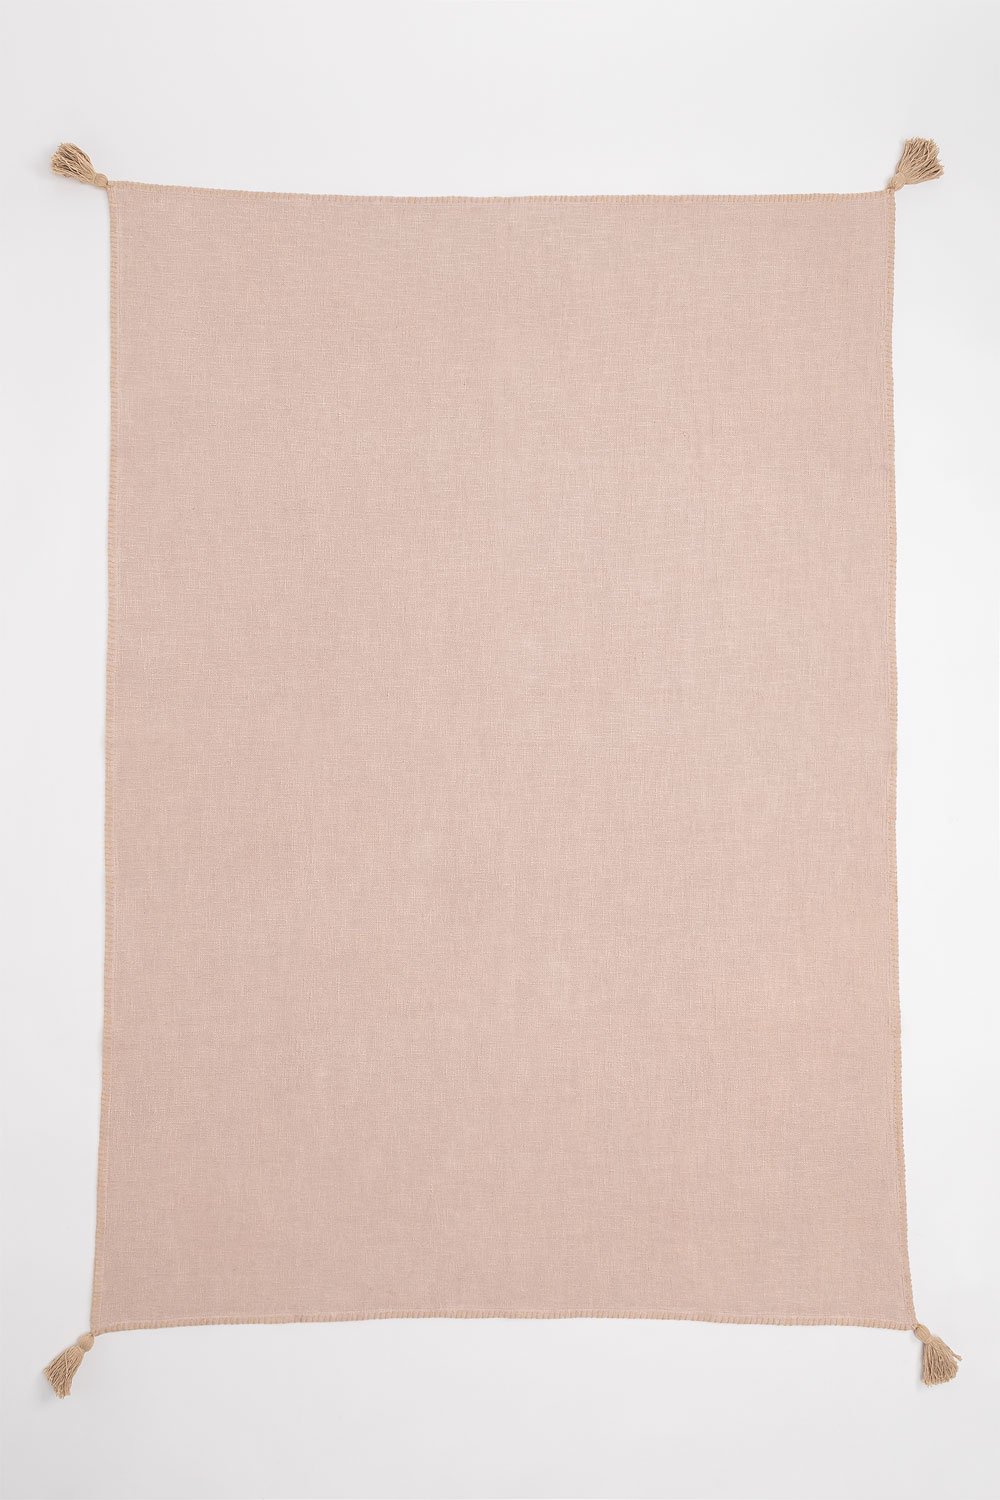 Geruite deken van katoen Paraiba, galerij beeld 1